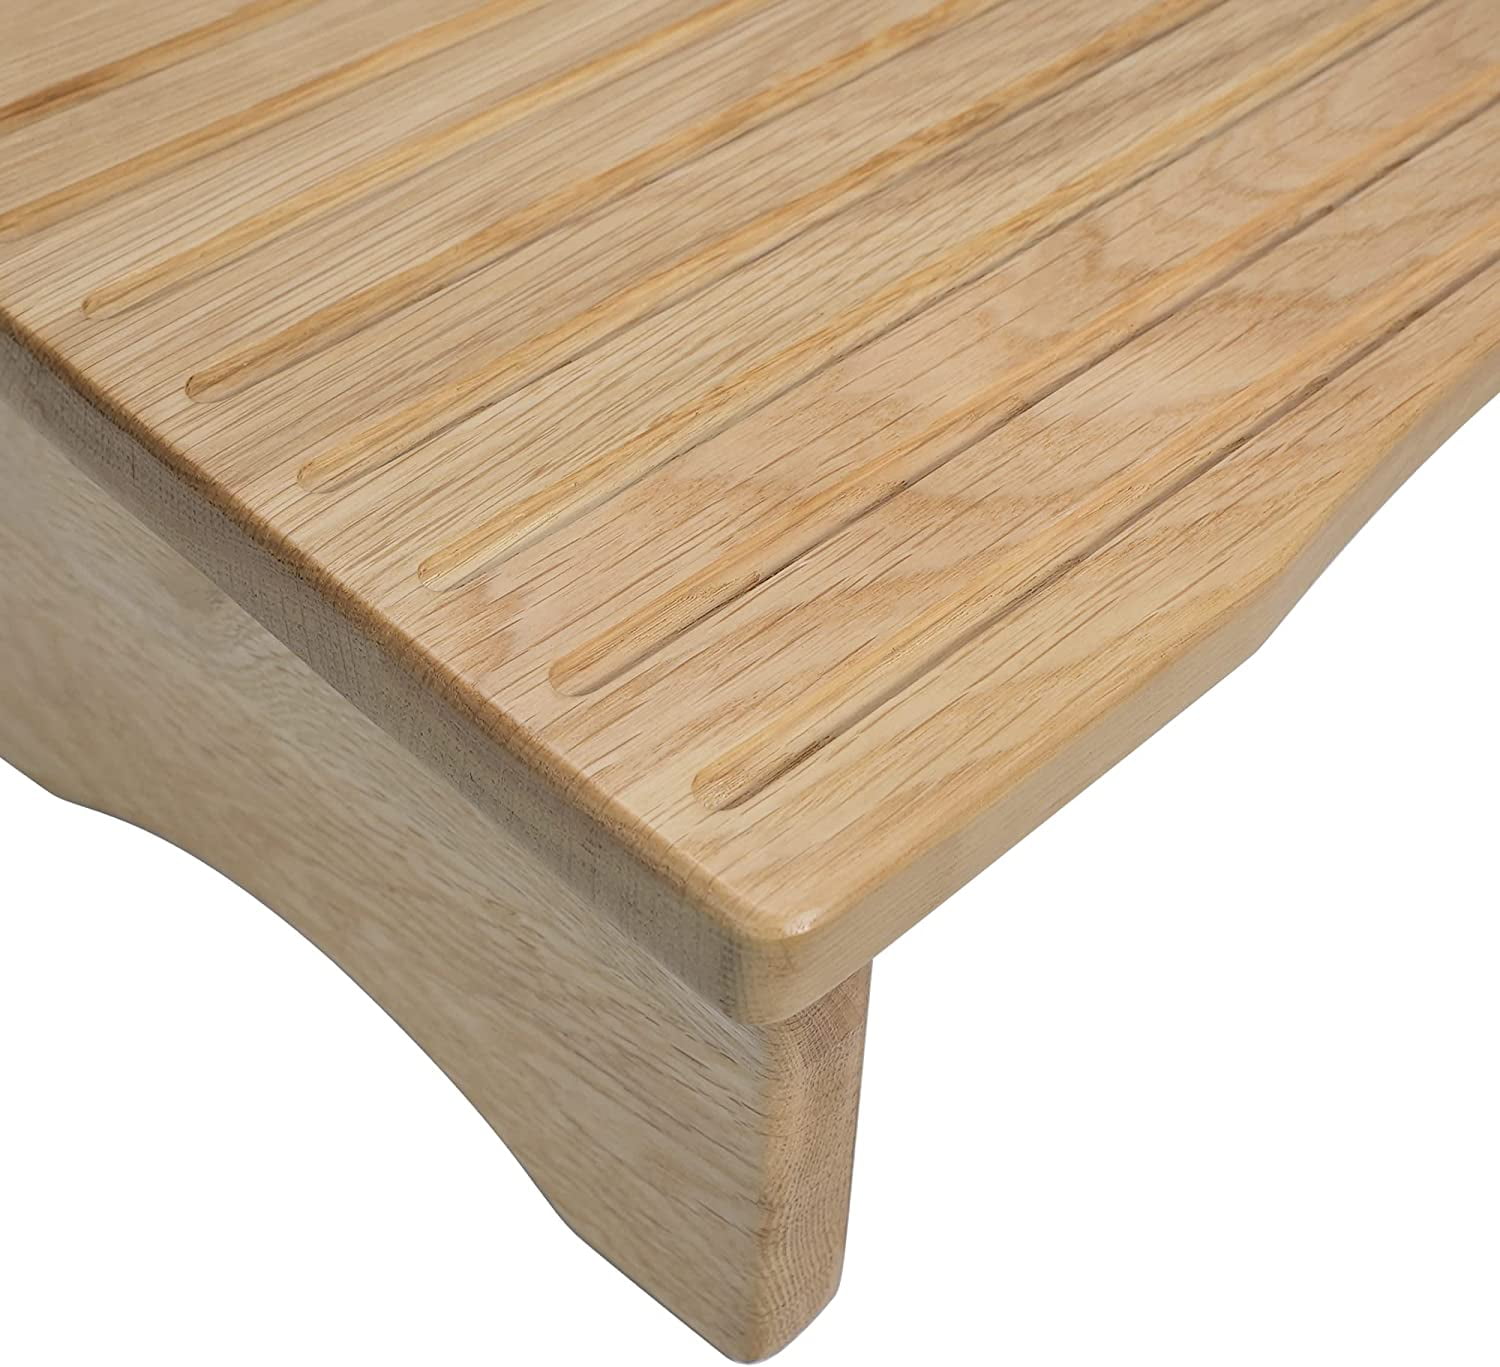 Natural Wood Under-Desk Ergonomic Footrest, Angled Posture Support